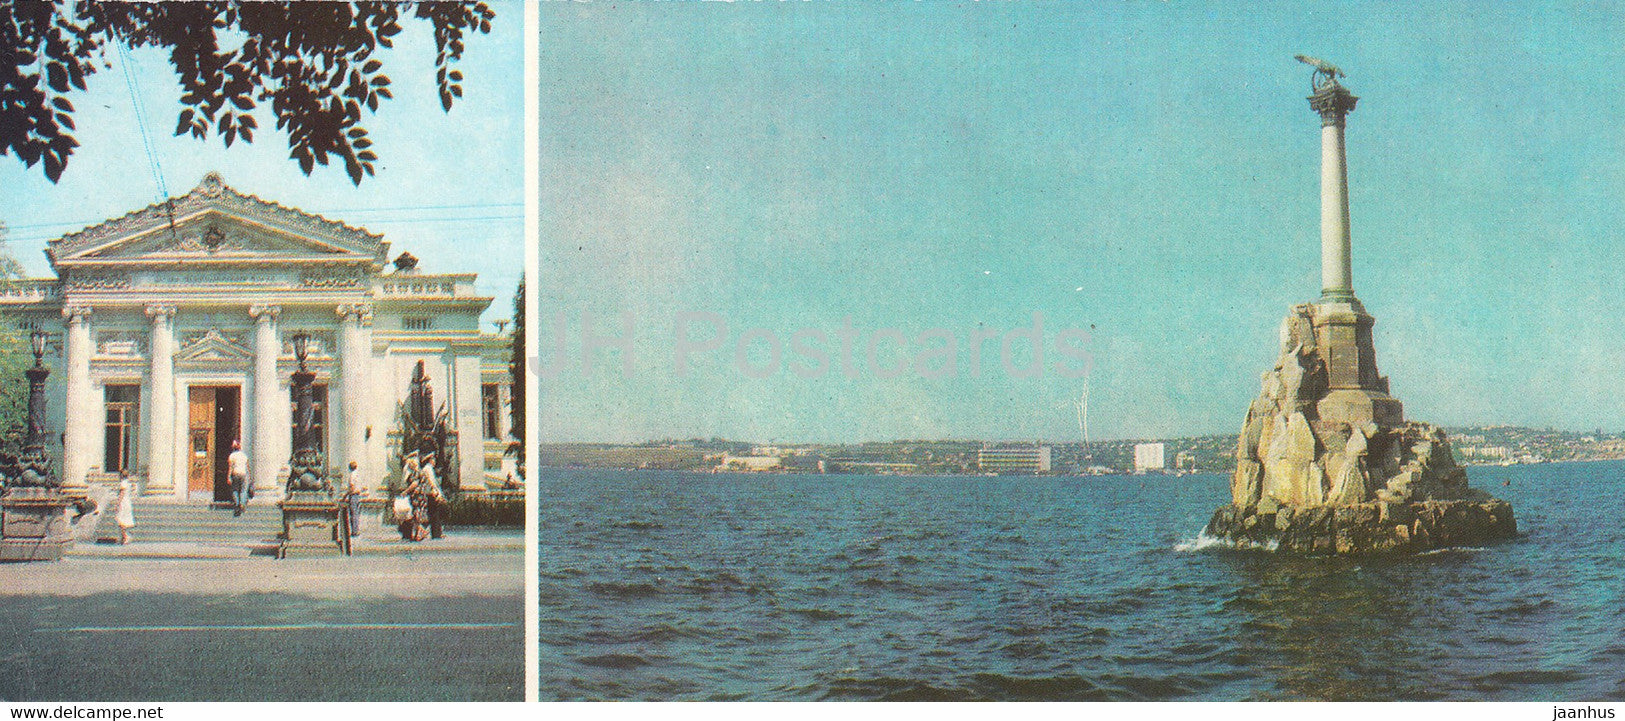 Sevastopol - Museum of the Red Banner Black Sea Fleet - monument - Crimea - 1983 - Ukraine USSR - unused - JH Postcards